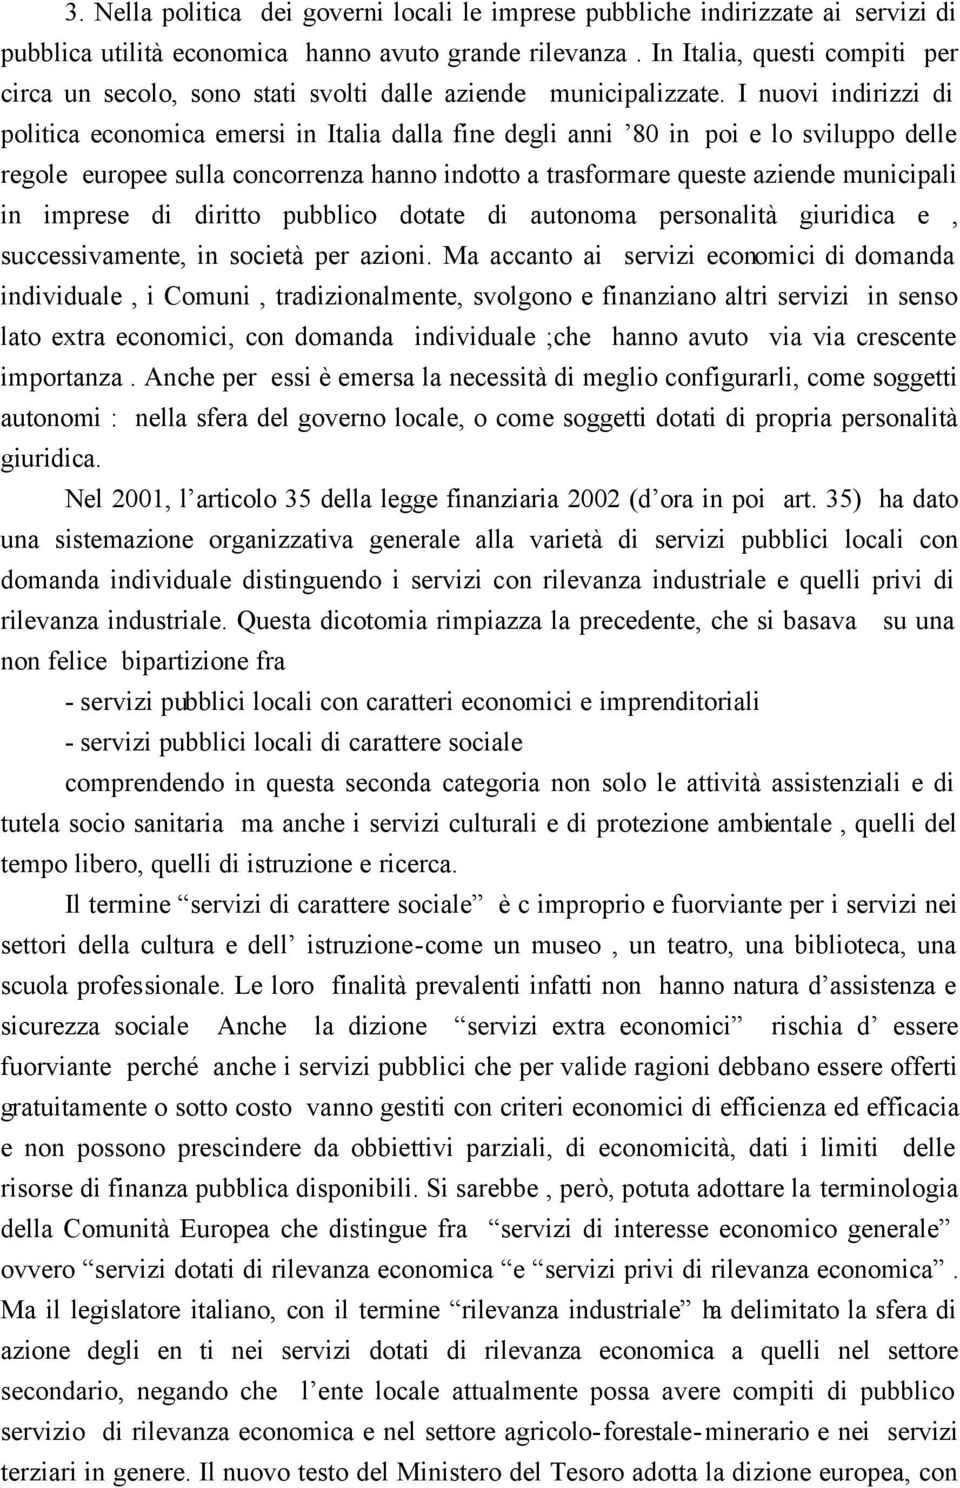 I nuovi indirizzi di politica economica emersi in Italia dalla fine degli anni 80 in poi e lo sviluppo delle regole europee sulla concorrenza hanno indotto a trasformare queste aziende municipali in